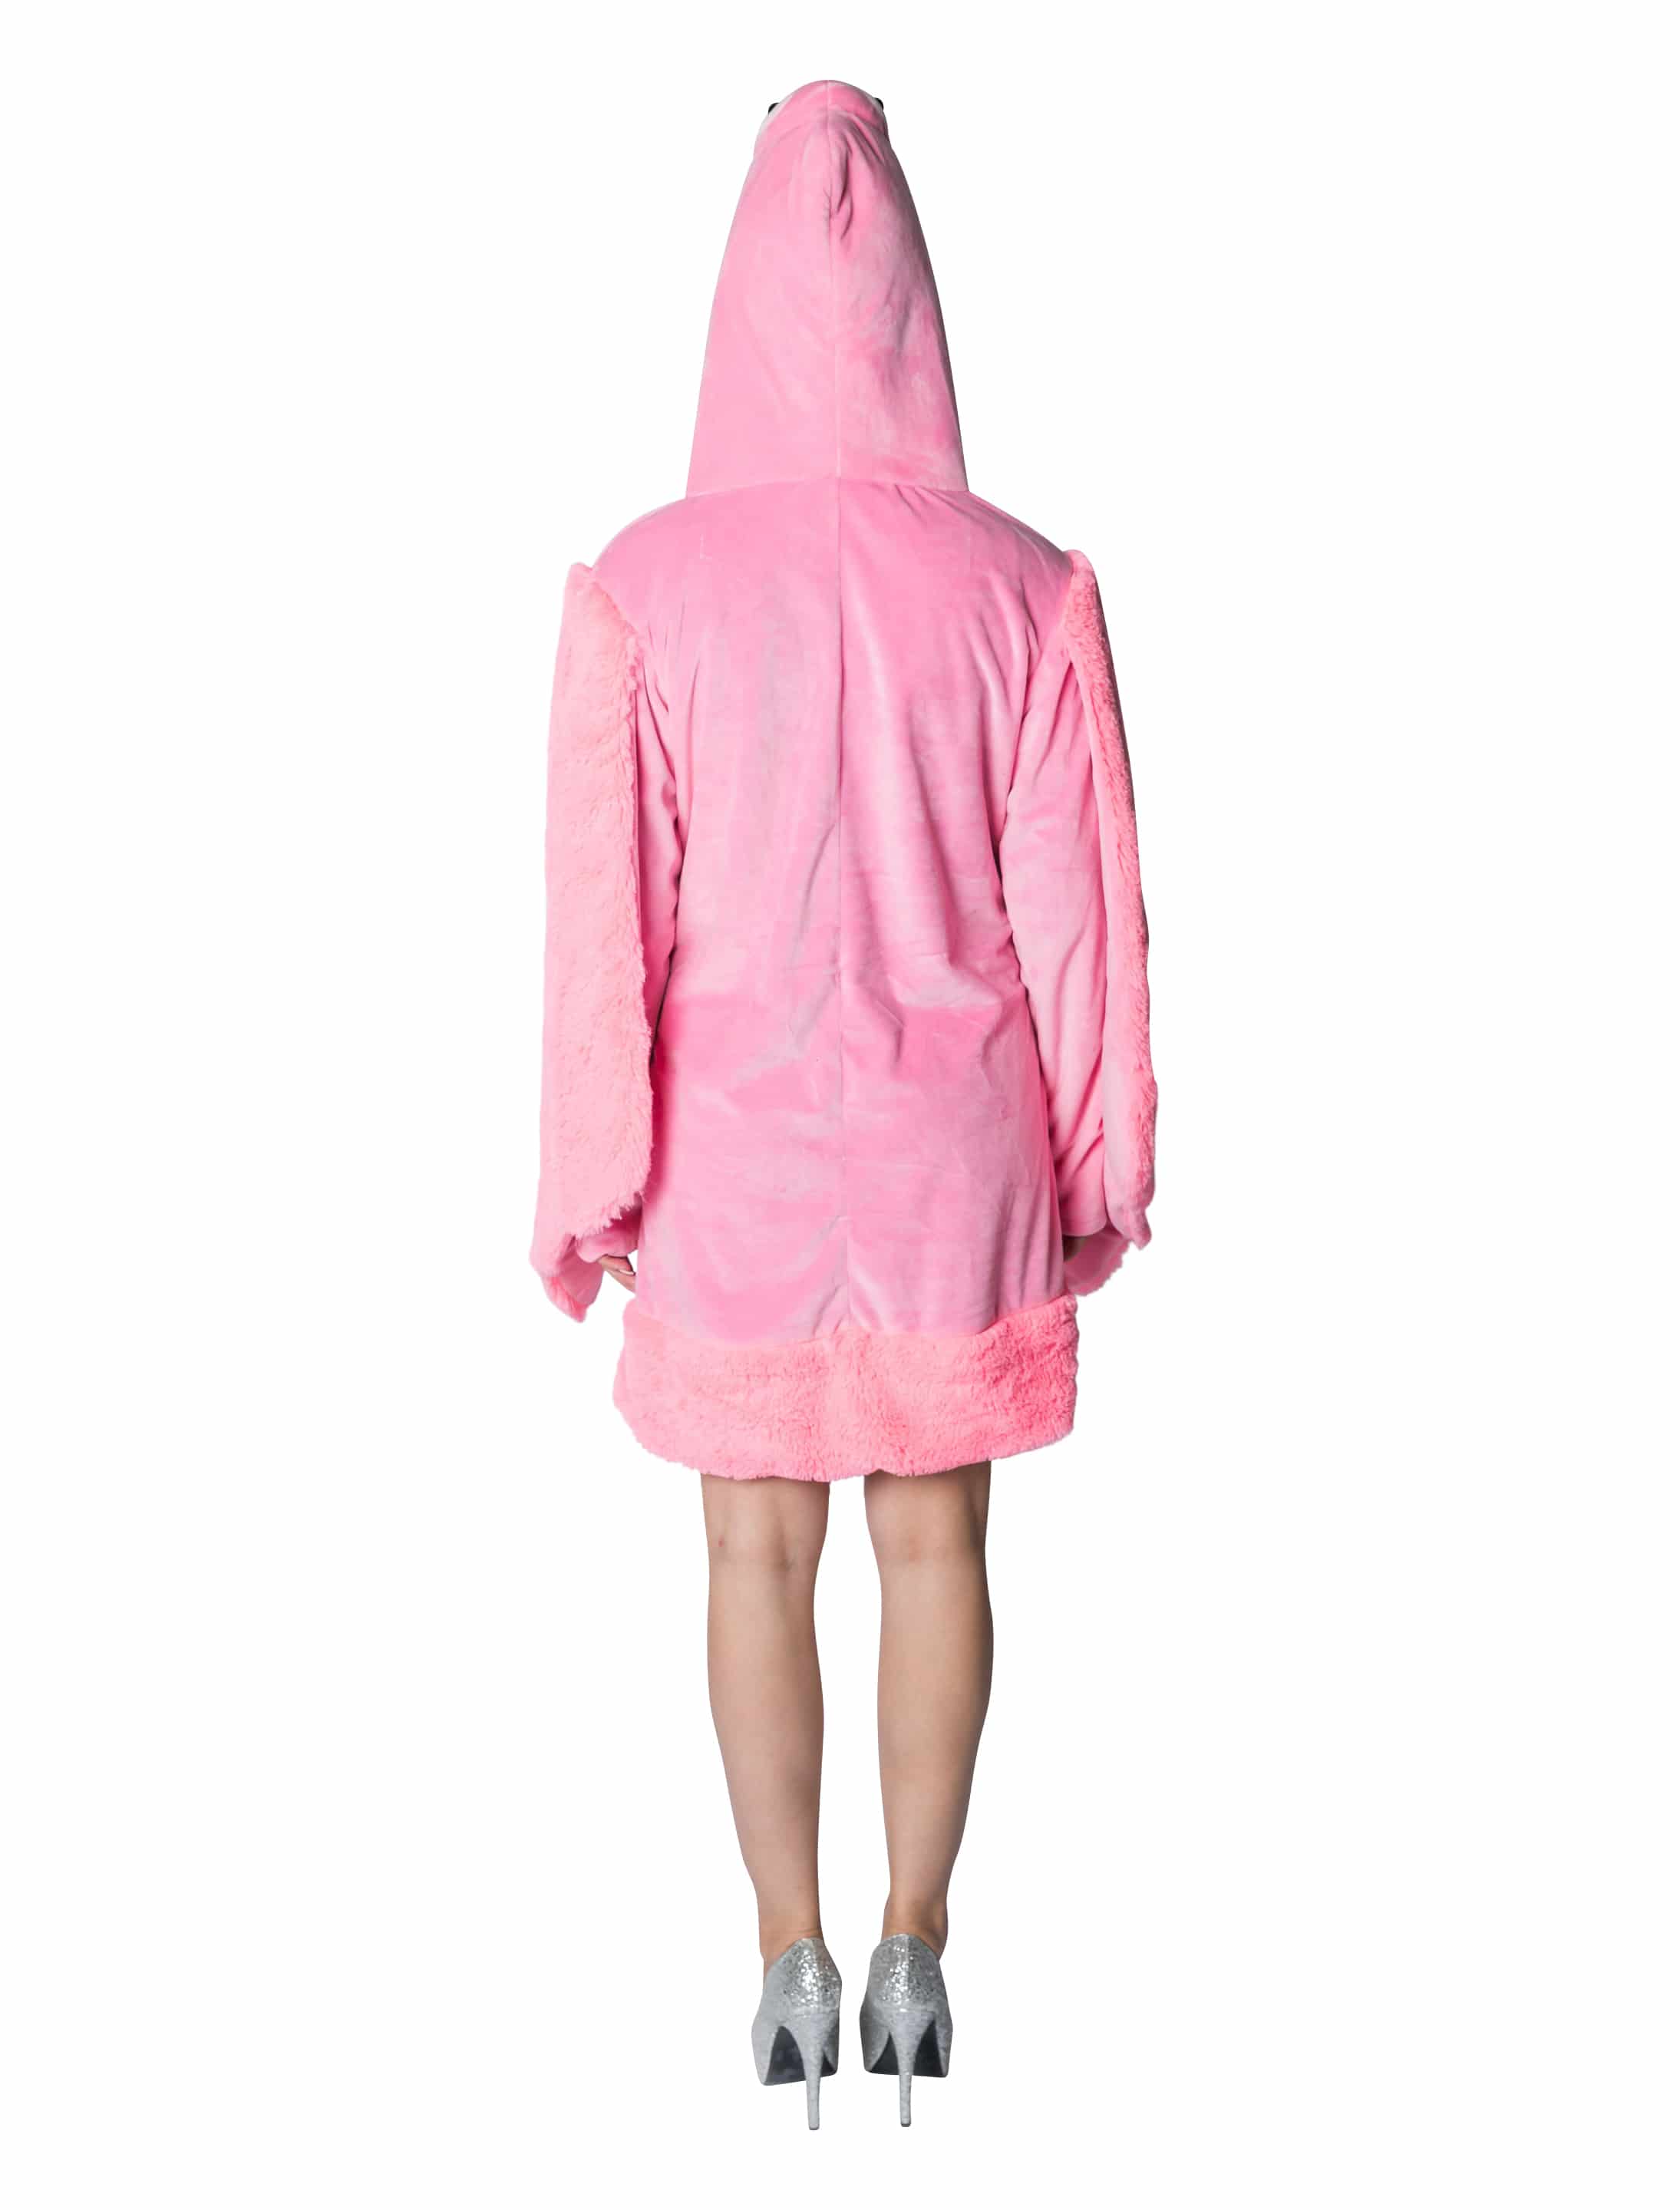 Kleid Plüsch Flamingo Damen pink 50/52